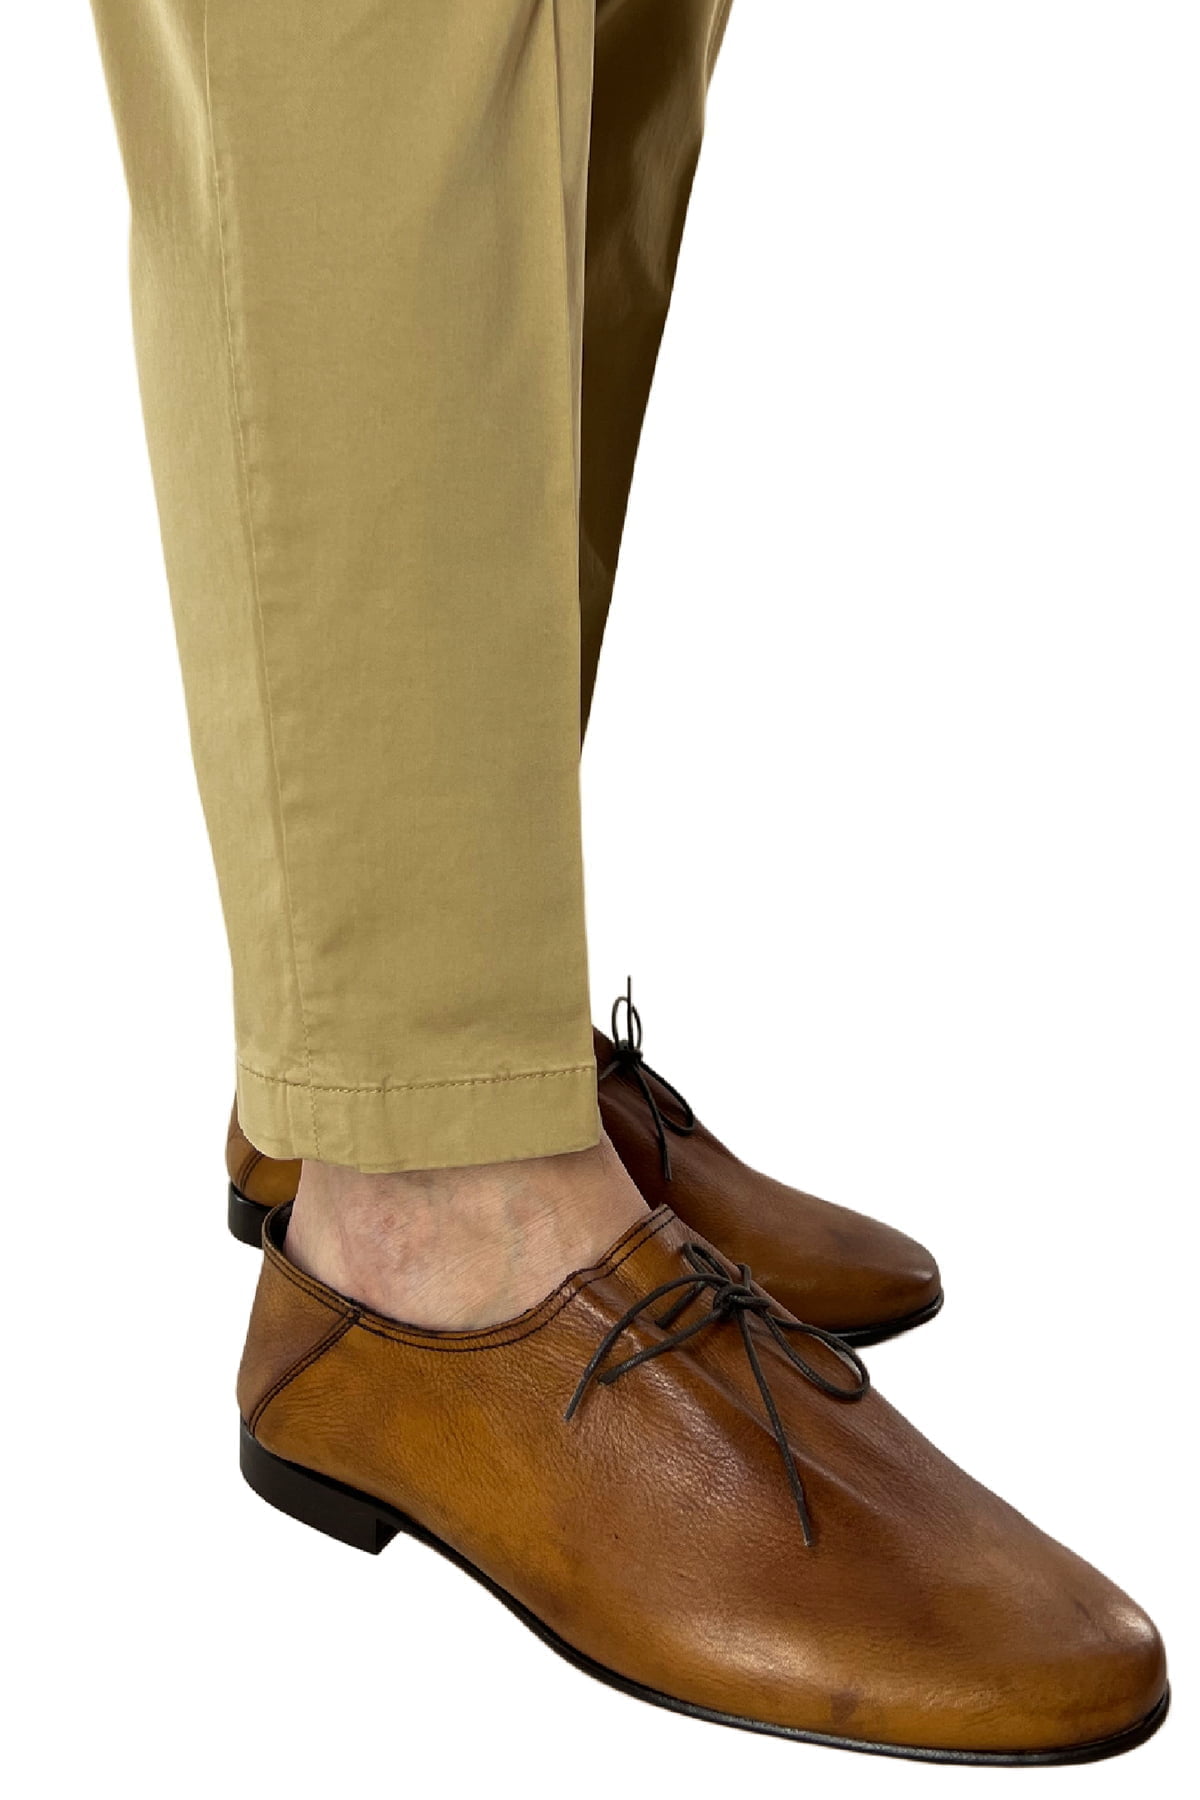 Pantalone uomo cammello in Cotone tasca america leggermente elastico estivo